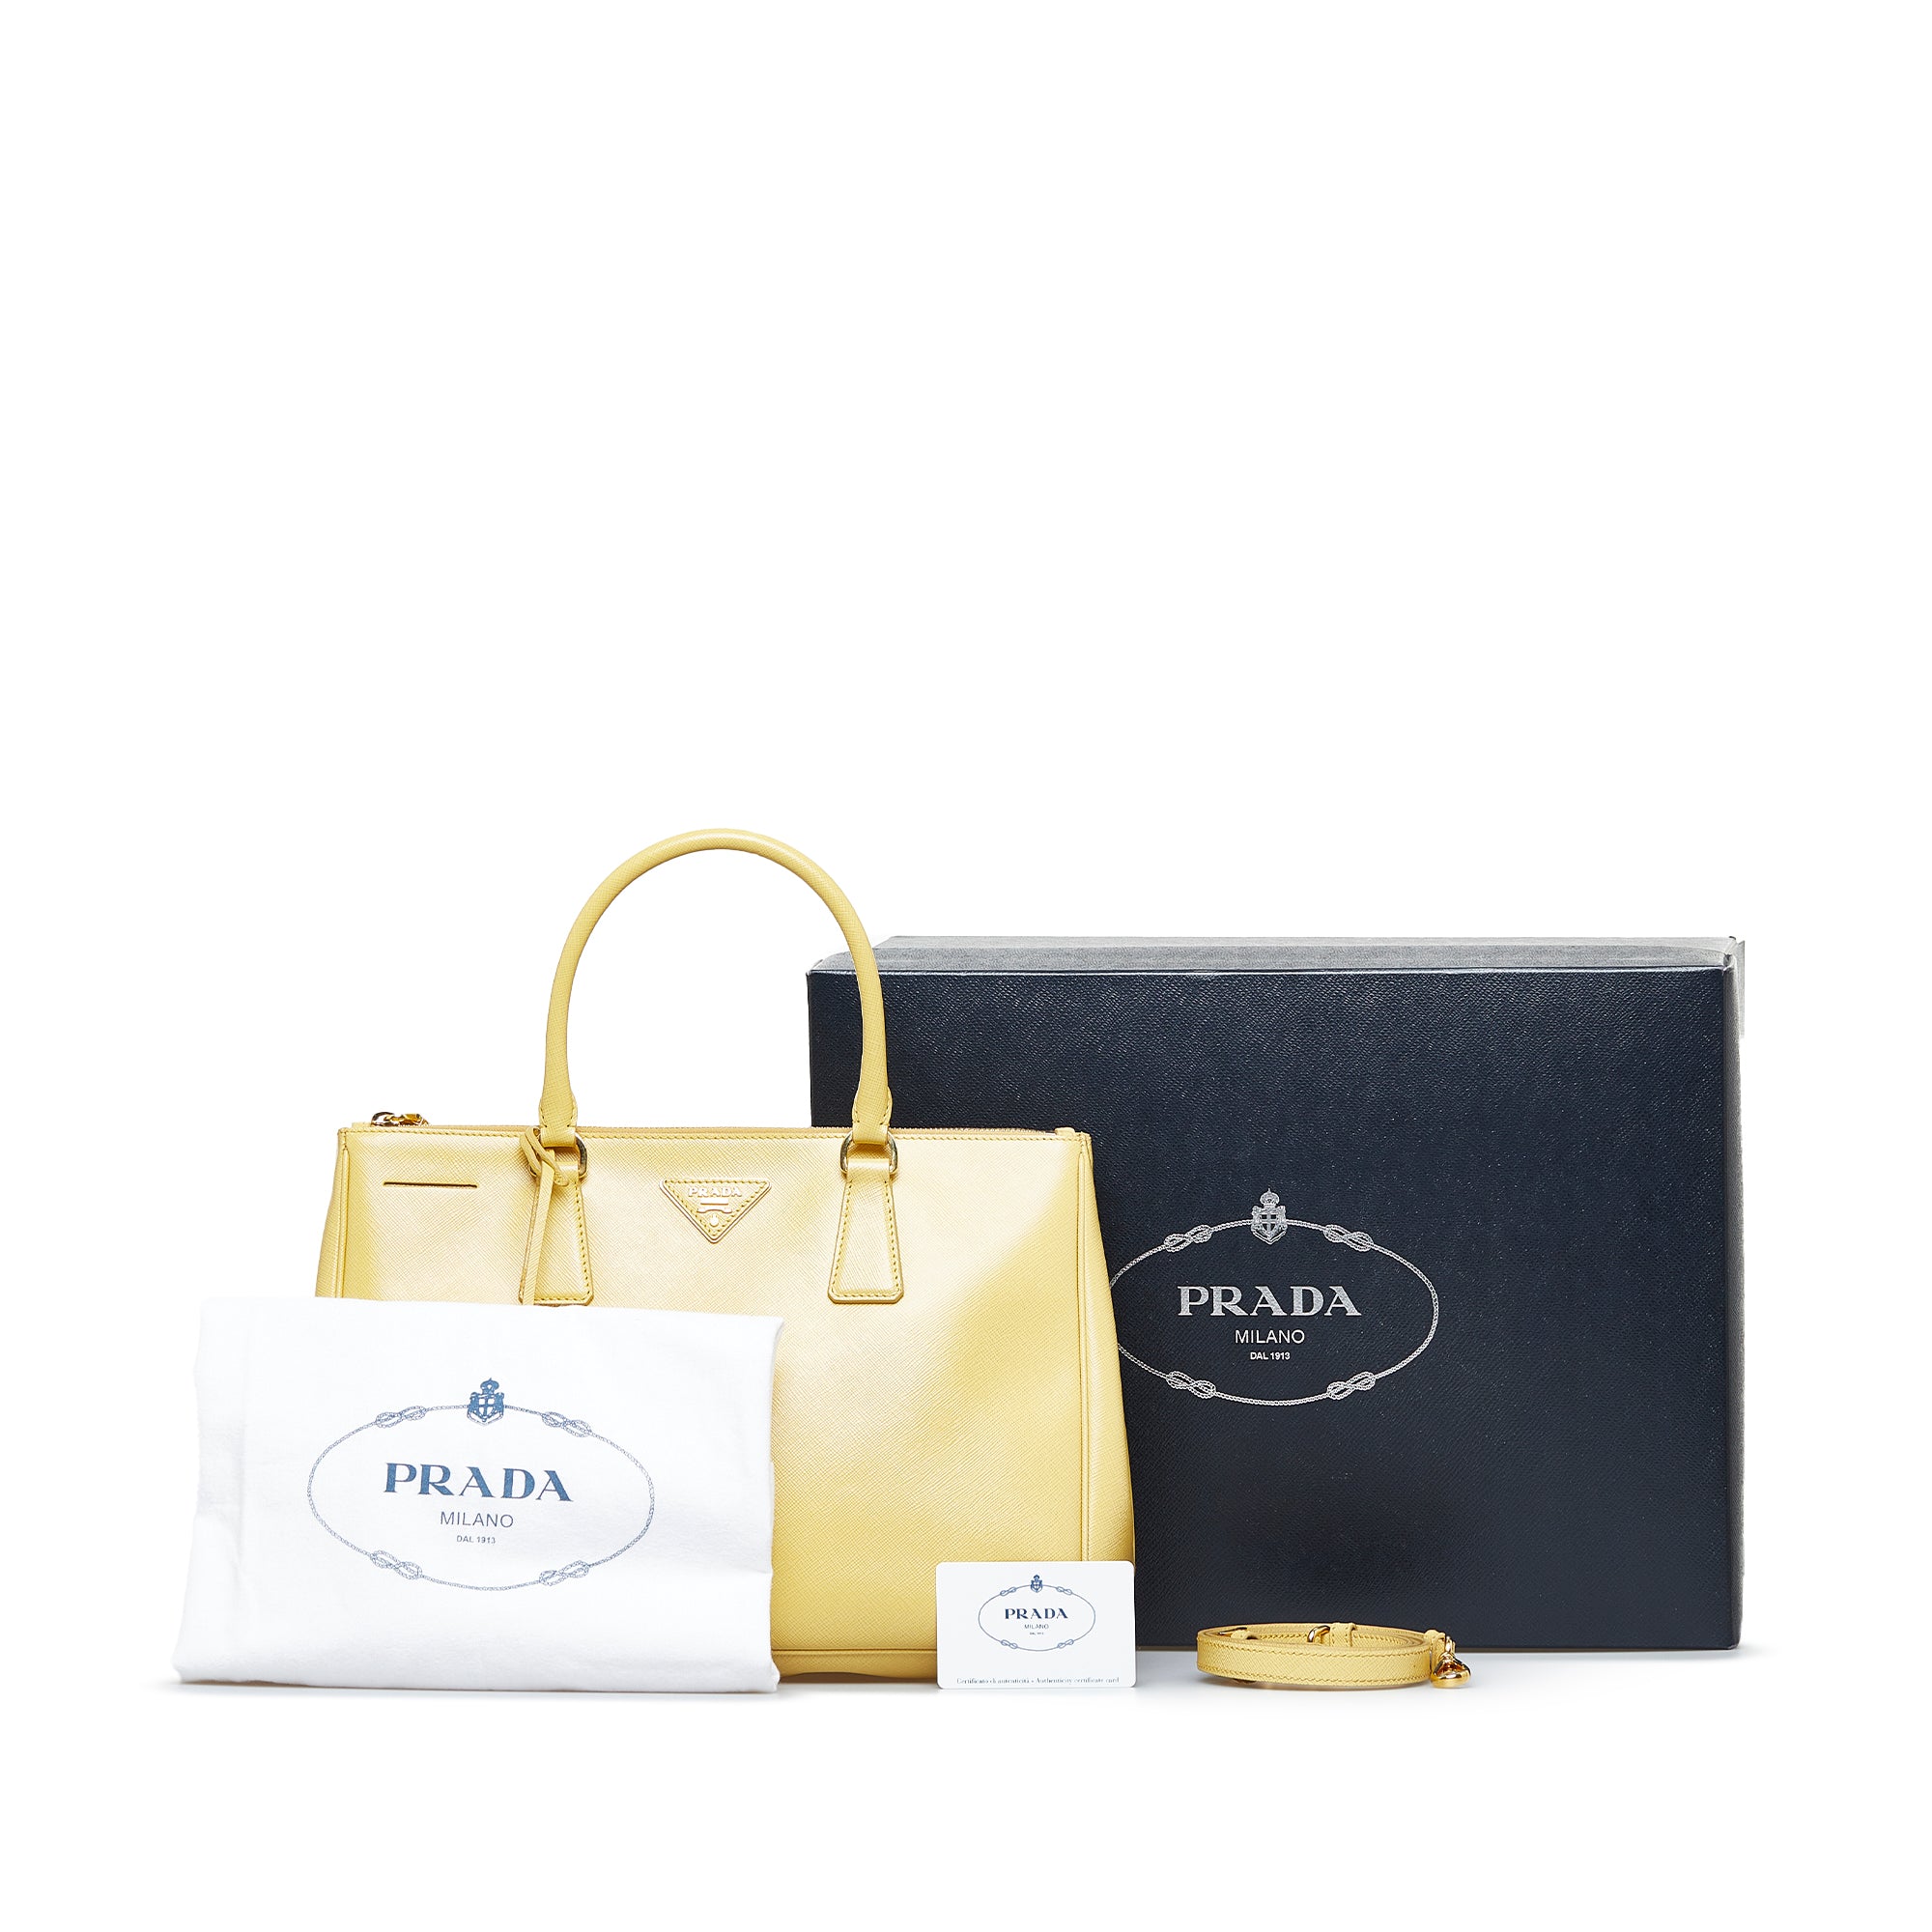 Authentic Prada Galleria Saffiano Leather Bag - Excellent